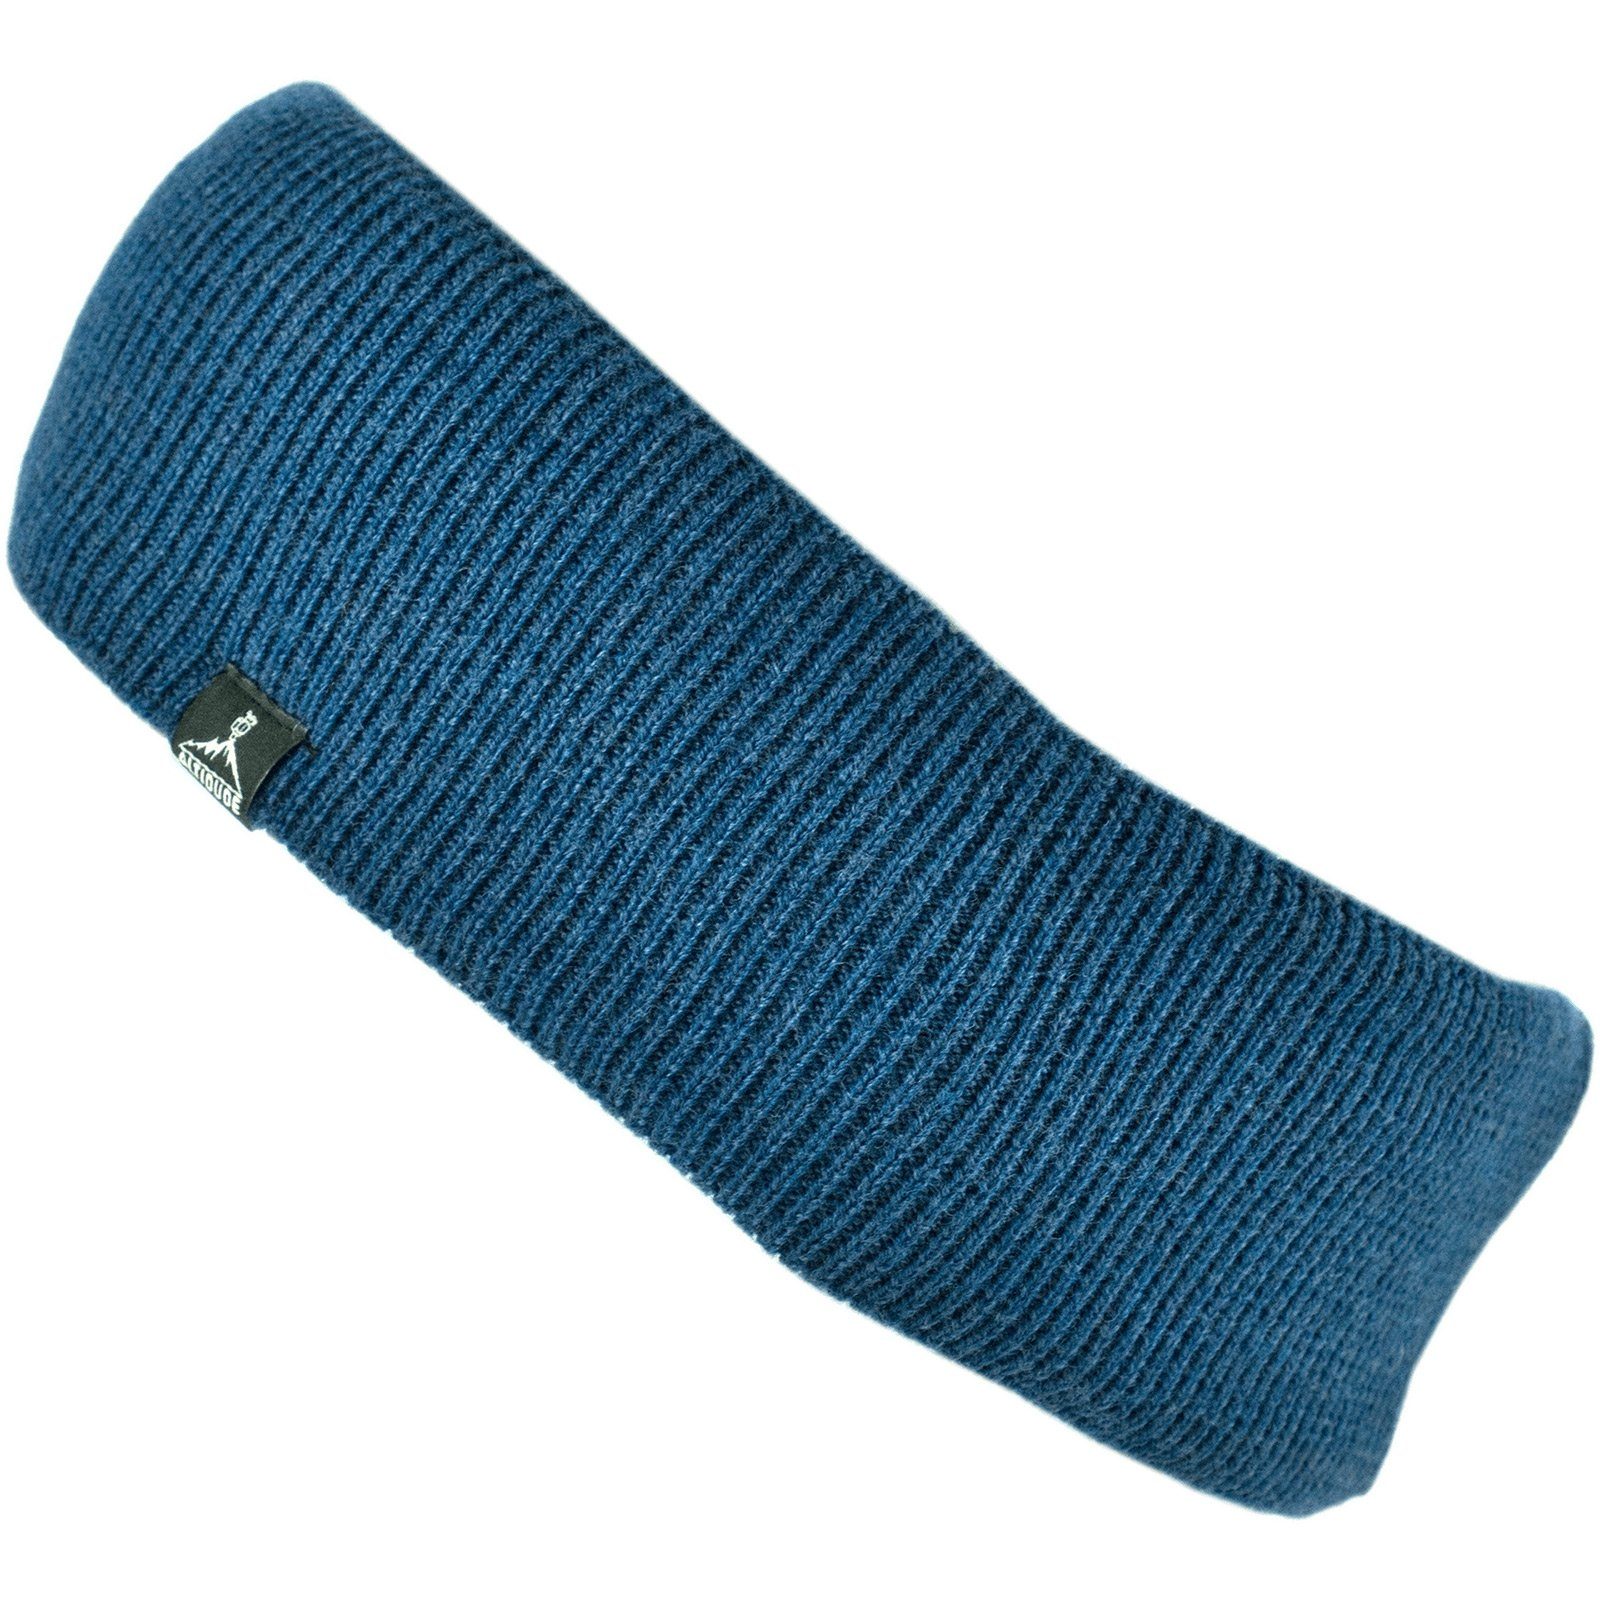 Merino Headband ALTIDUDE Wolle Rip % 100 Blau Strick Schützer Stirnband Unisex Stirnband Ohren